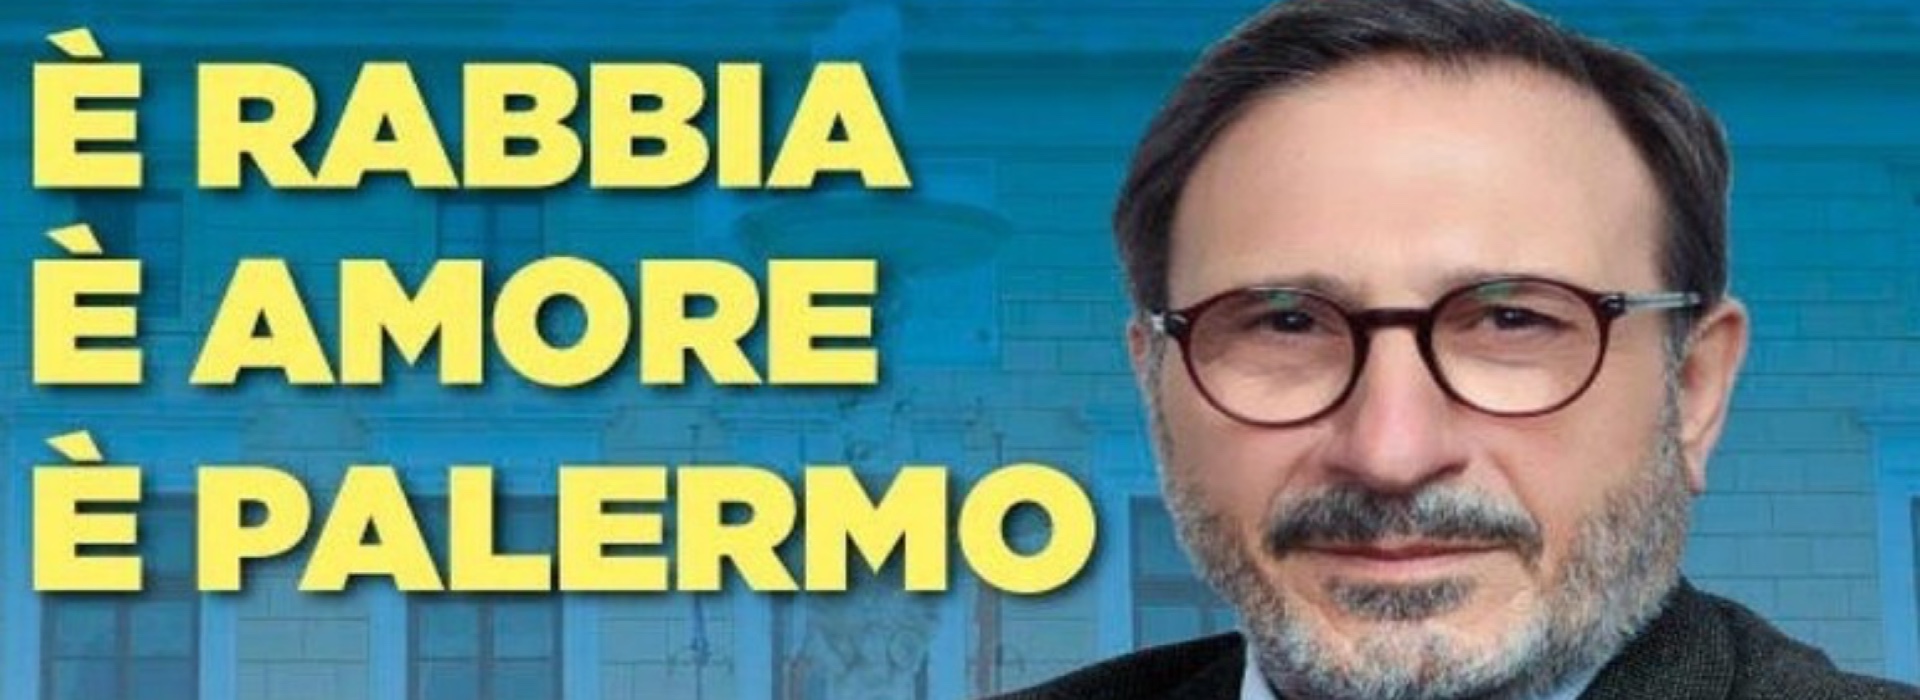 Palermo: arrestato ex consigliere di Fratelli d'Italia coinvolto in mafia e voto di scambio